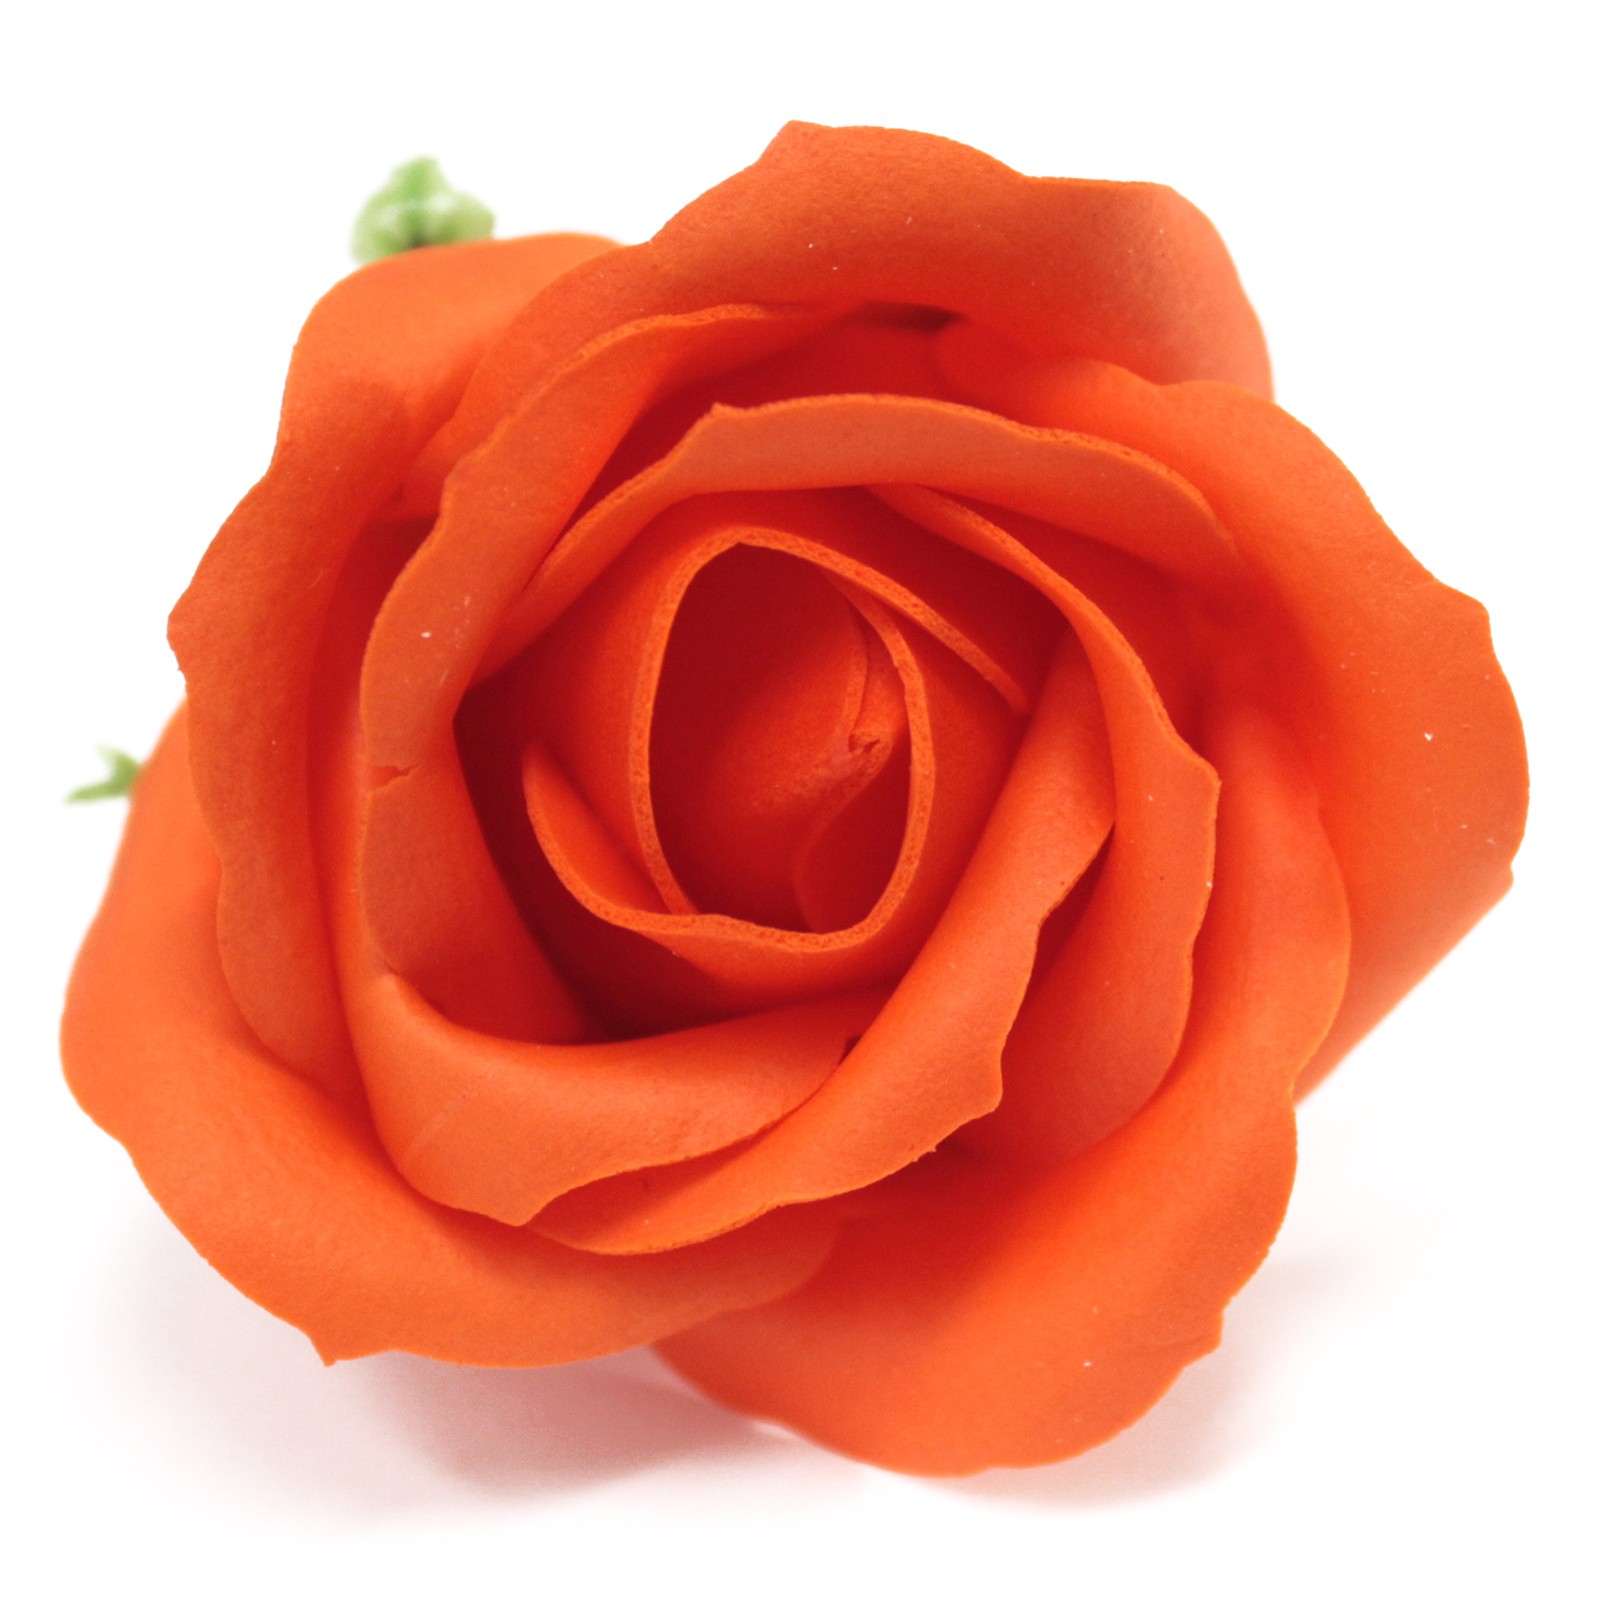 10 x Craft Soap Flowers - Med Rose - Sunset Orange